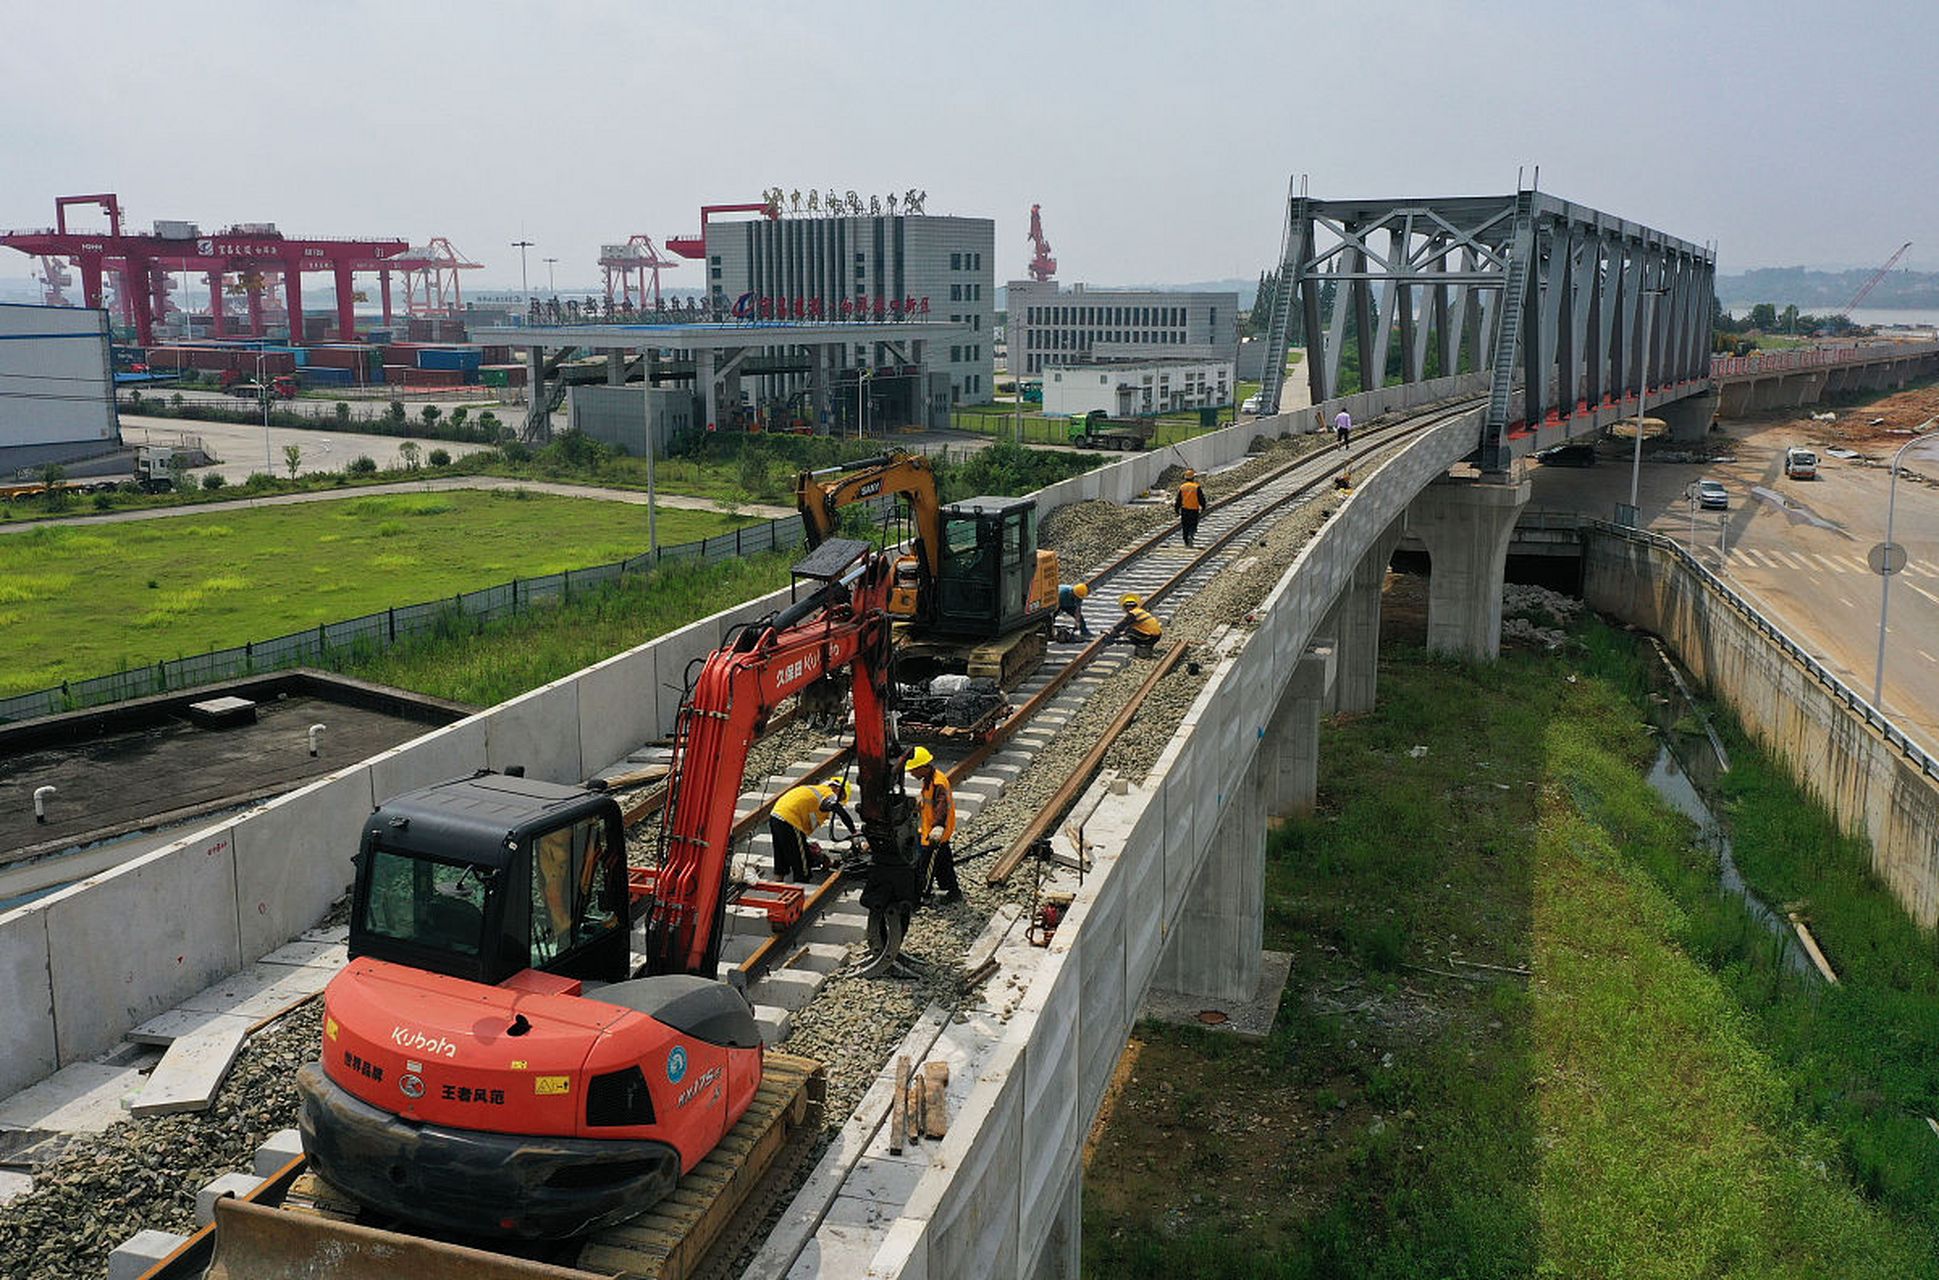 湛海高铁始于湛江市霞山区湛江北站,经雷州市,徐闻县后通过轮渡接入